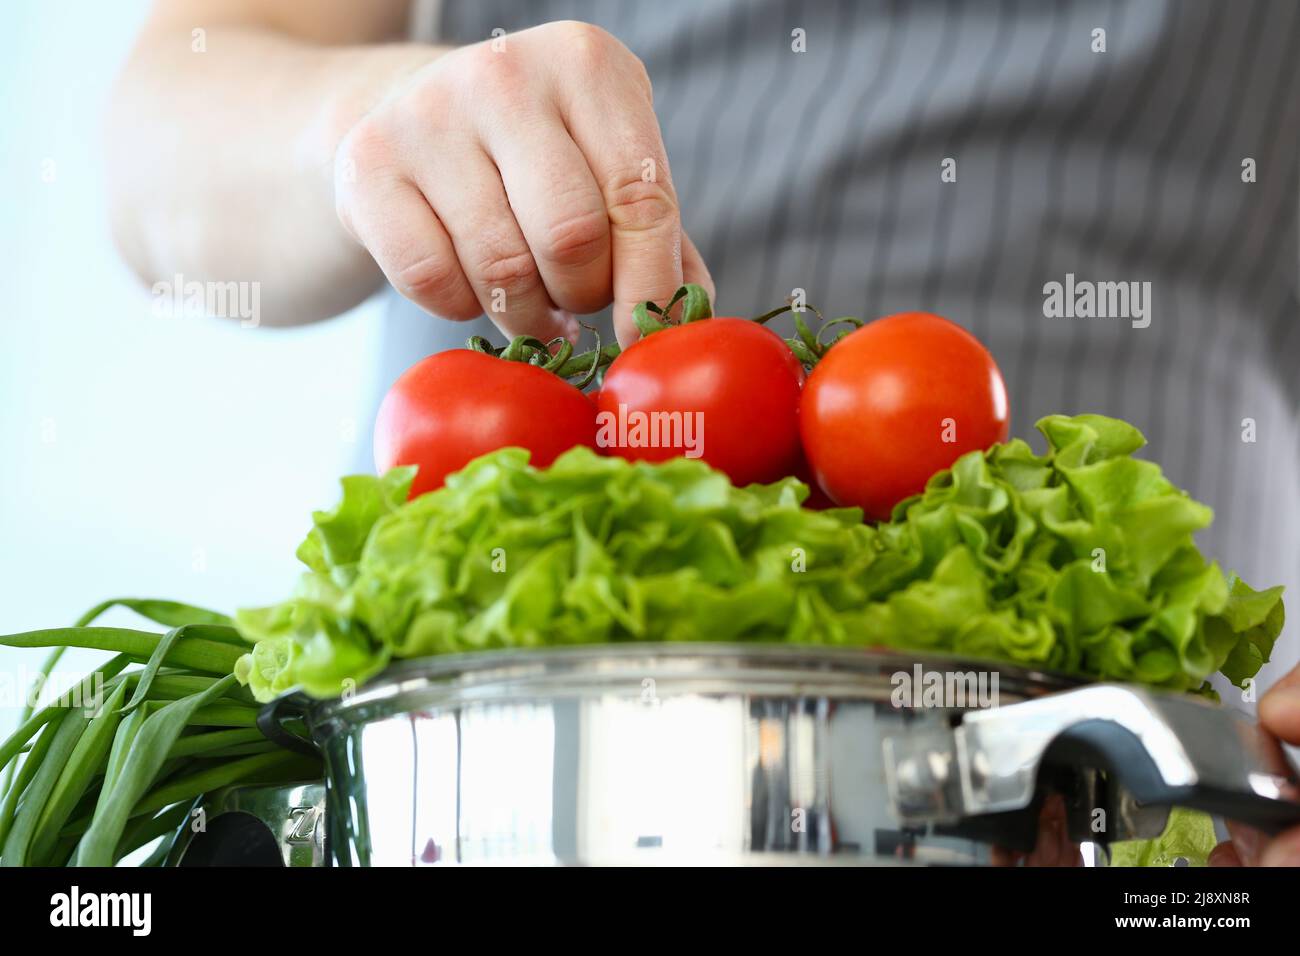 Le chef met les tomates mûres sur la laitue, l'homme prépare une nouvelle recette, essayez la nourriture végétarienne Banque D'Images